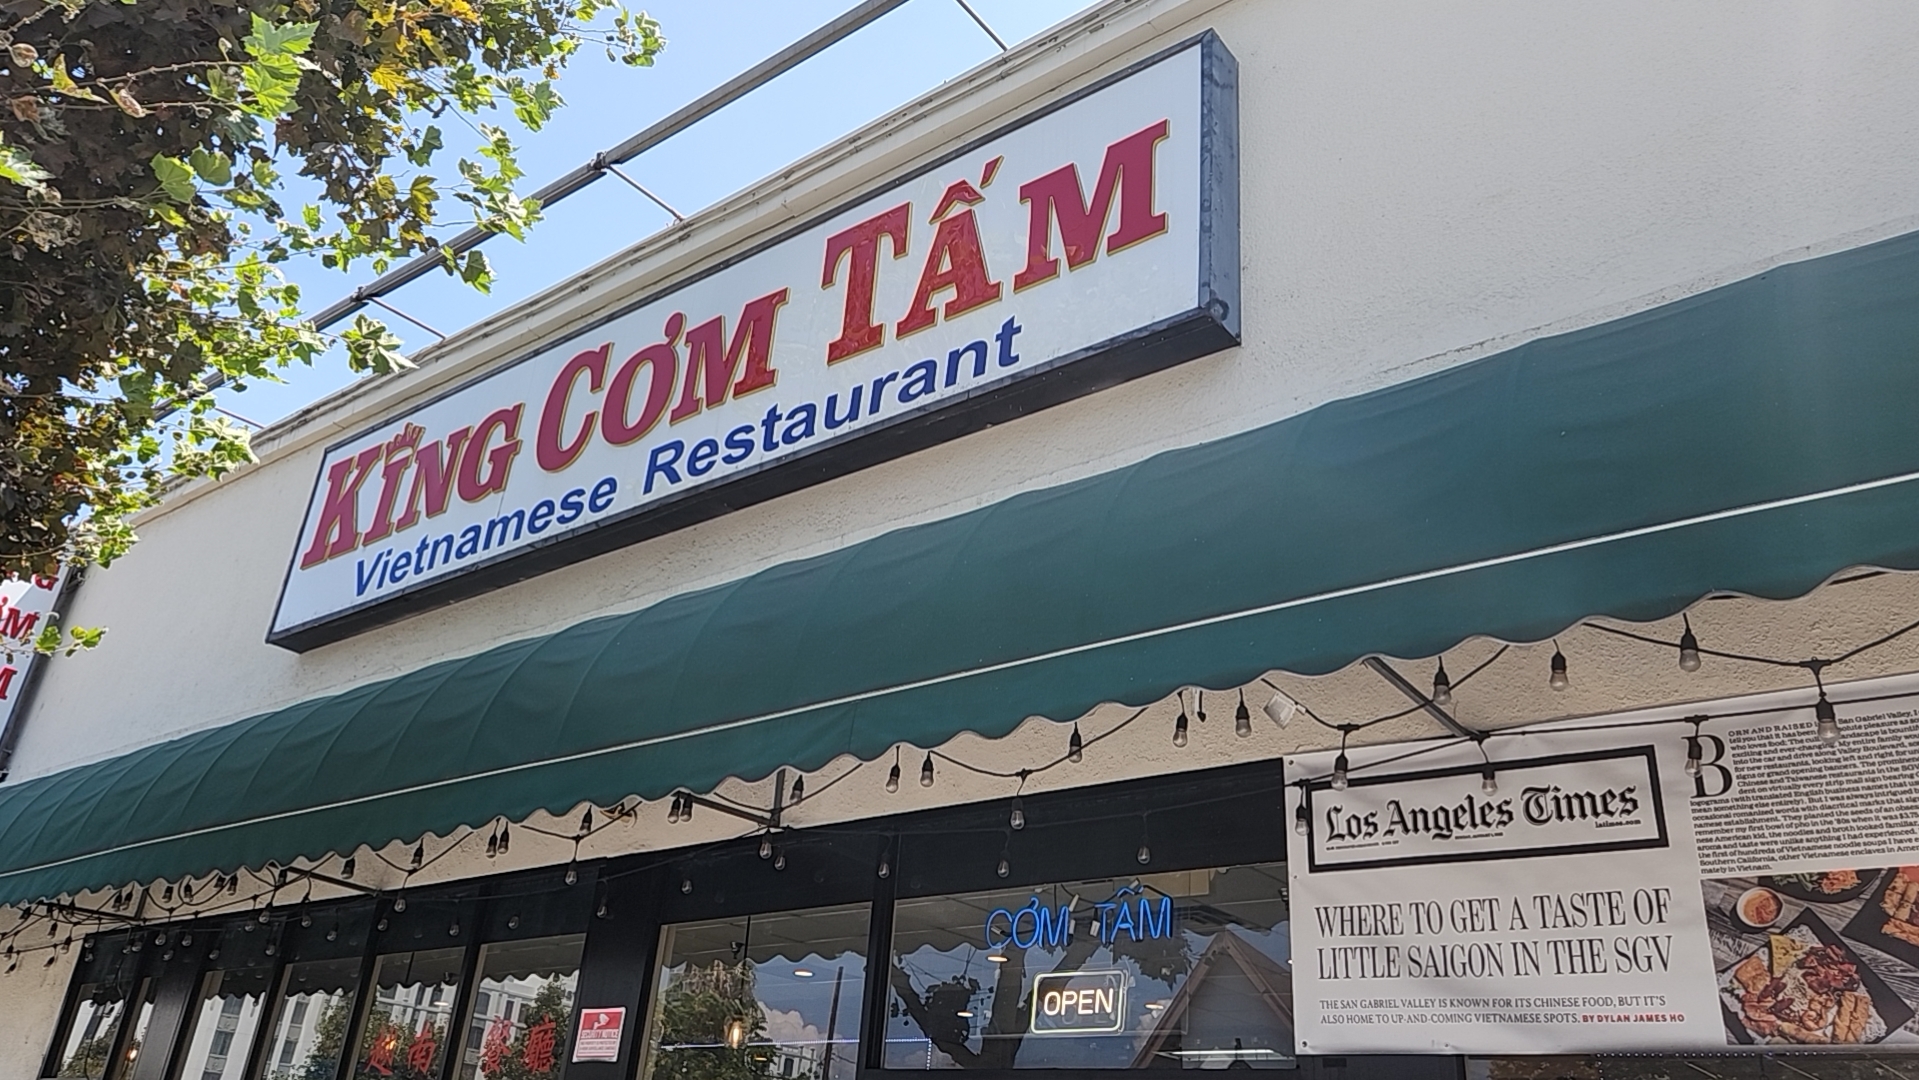 King Com Tam